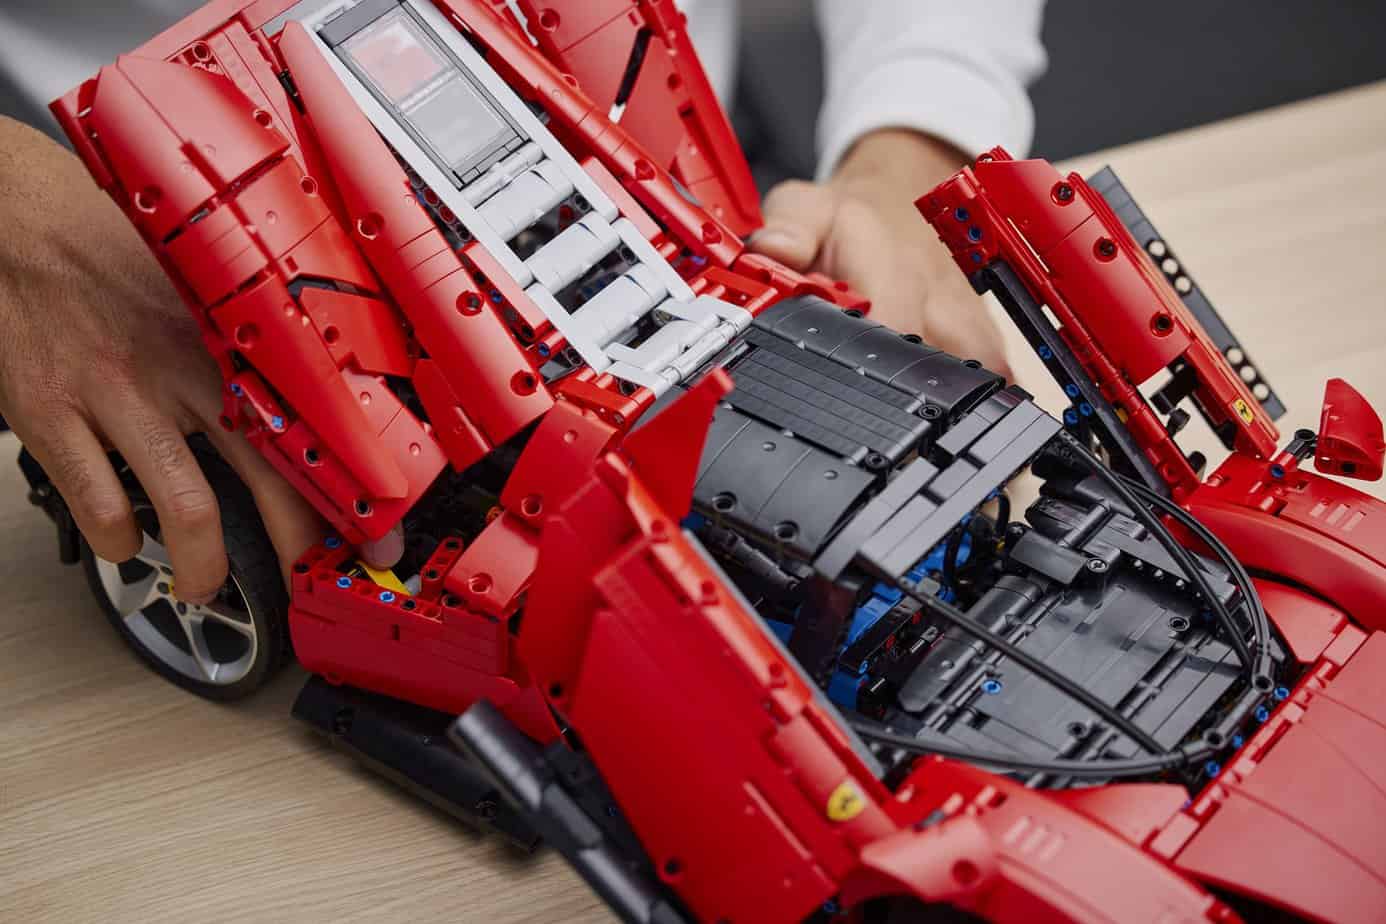 Zabawki i modele kolekcjonerskie aut dla fanów motoryzacji